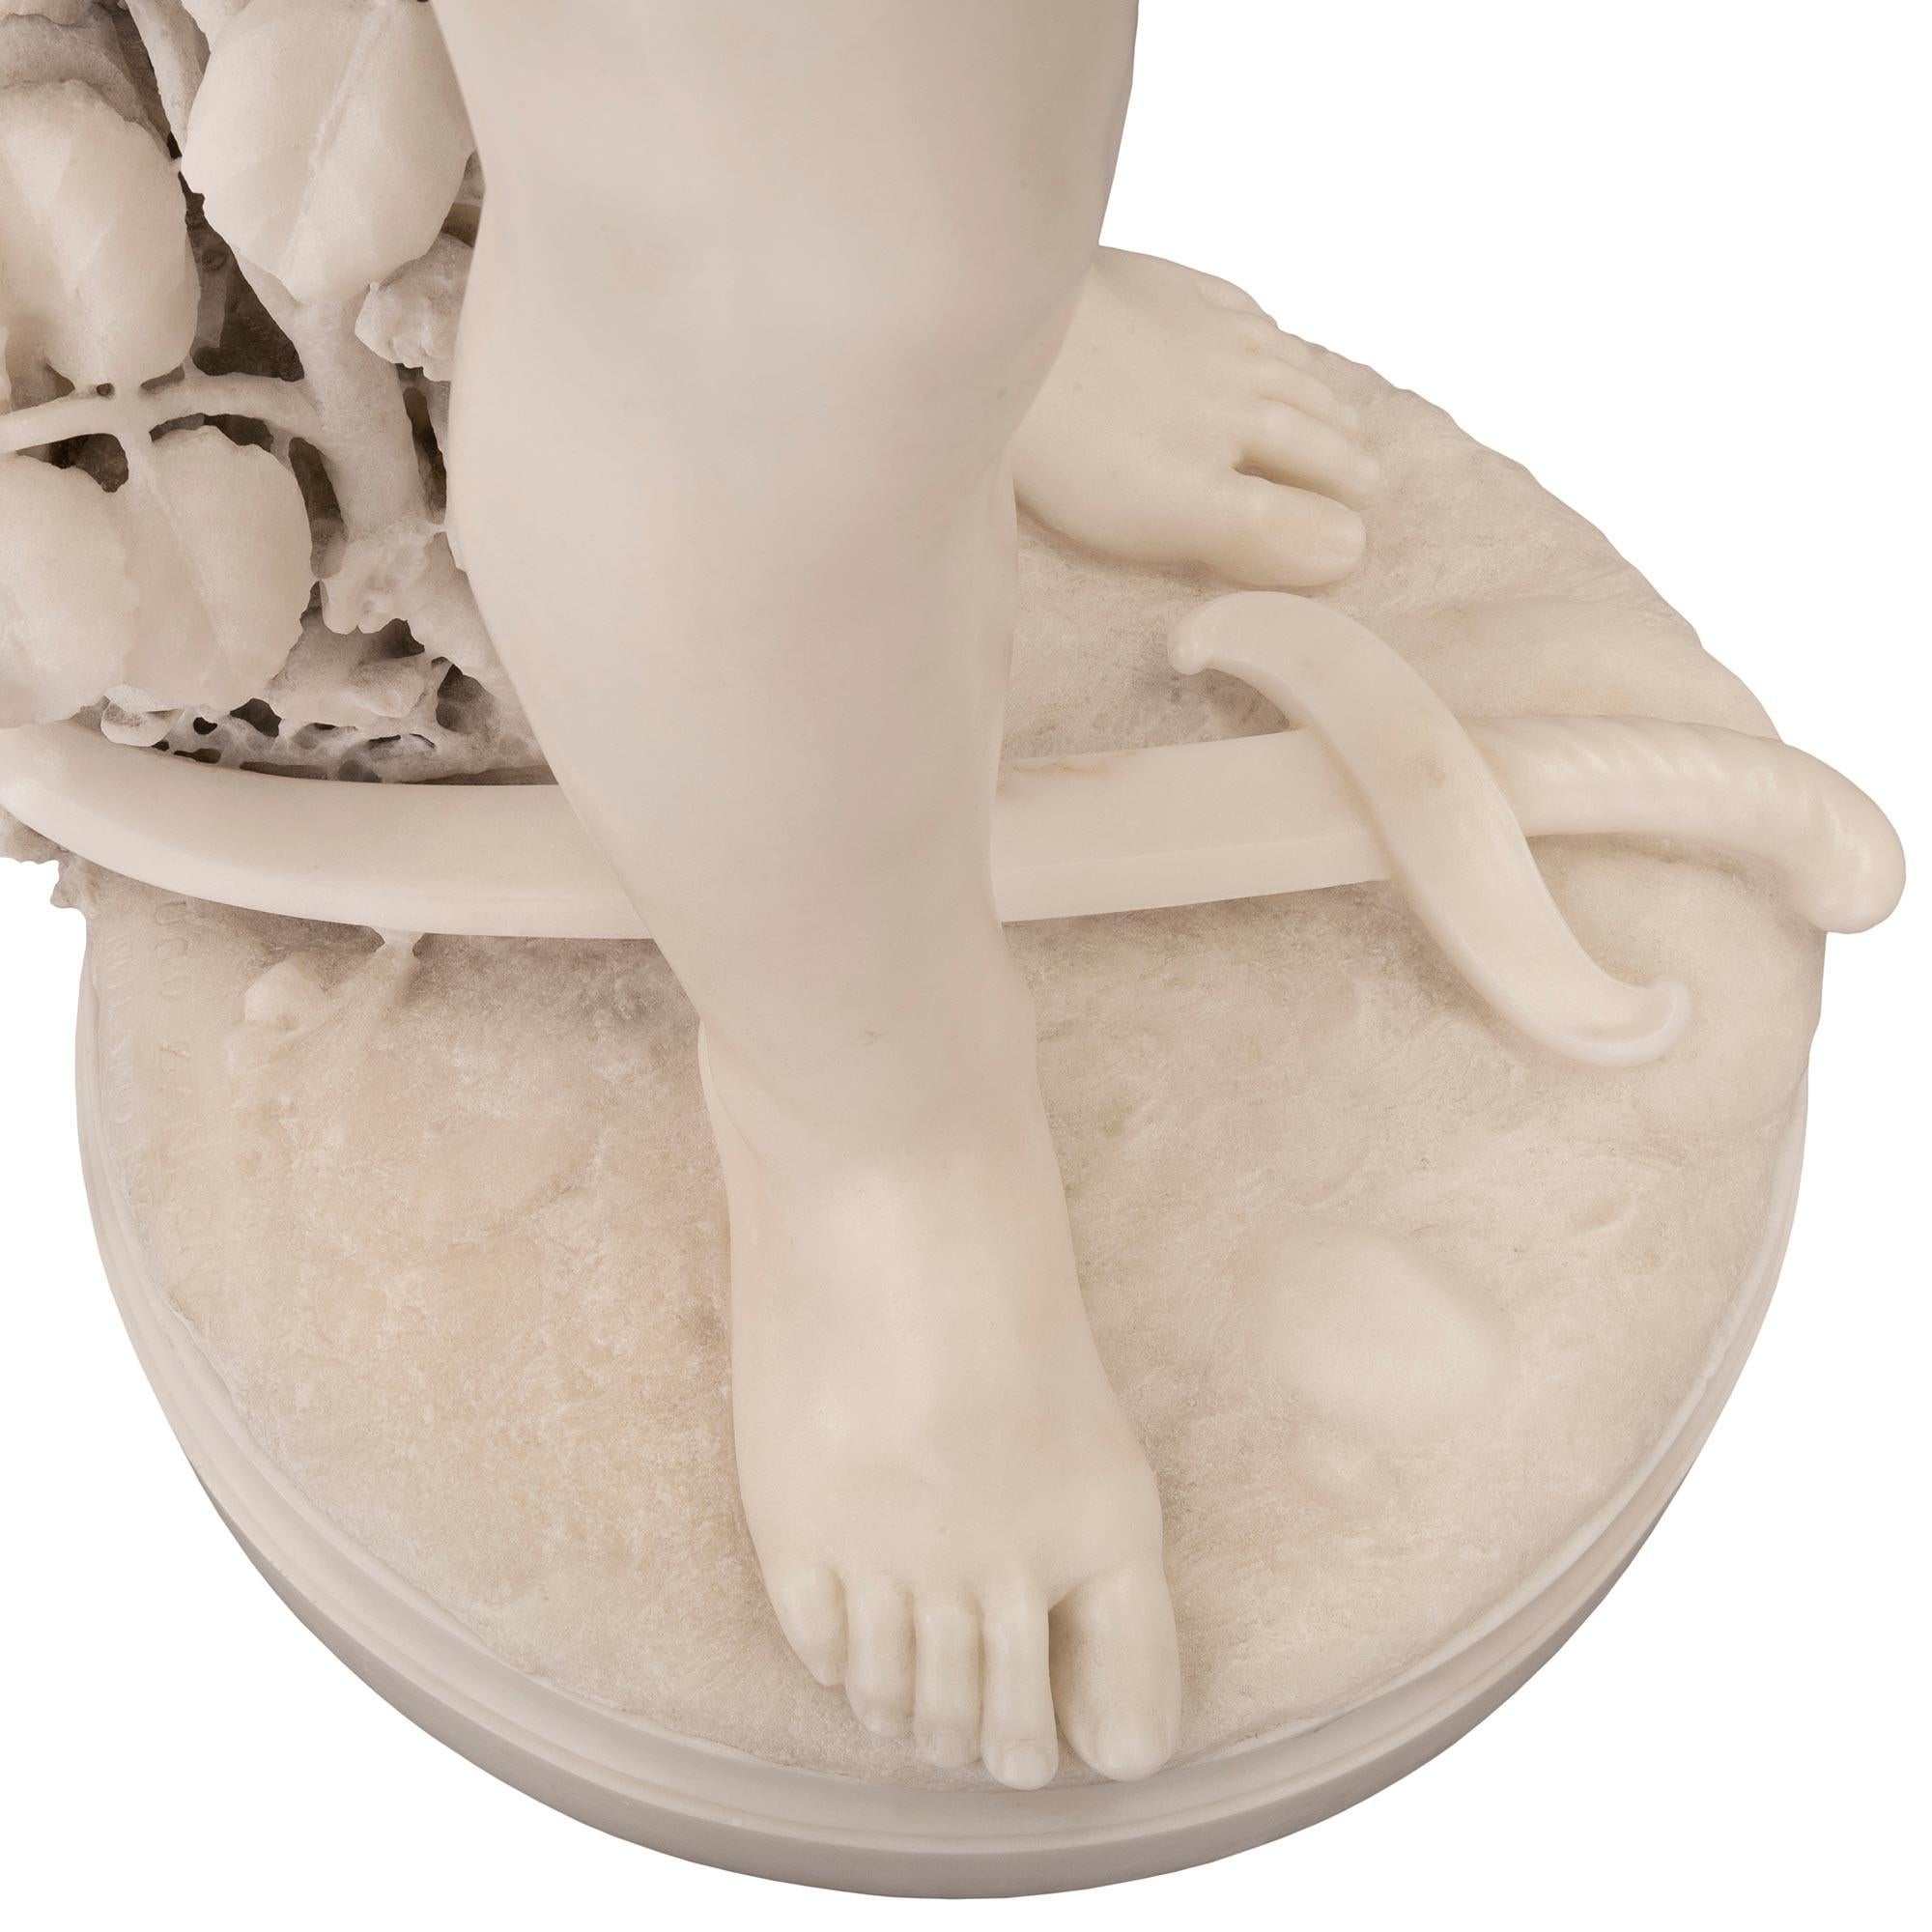 Italian 19th Century White Carrara Marble Statue of a Boy Signed Ugo Zannoni For Sale 4